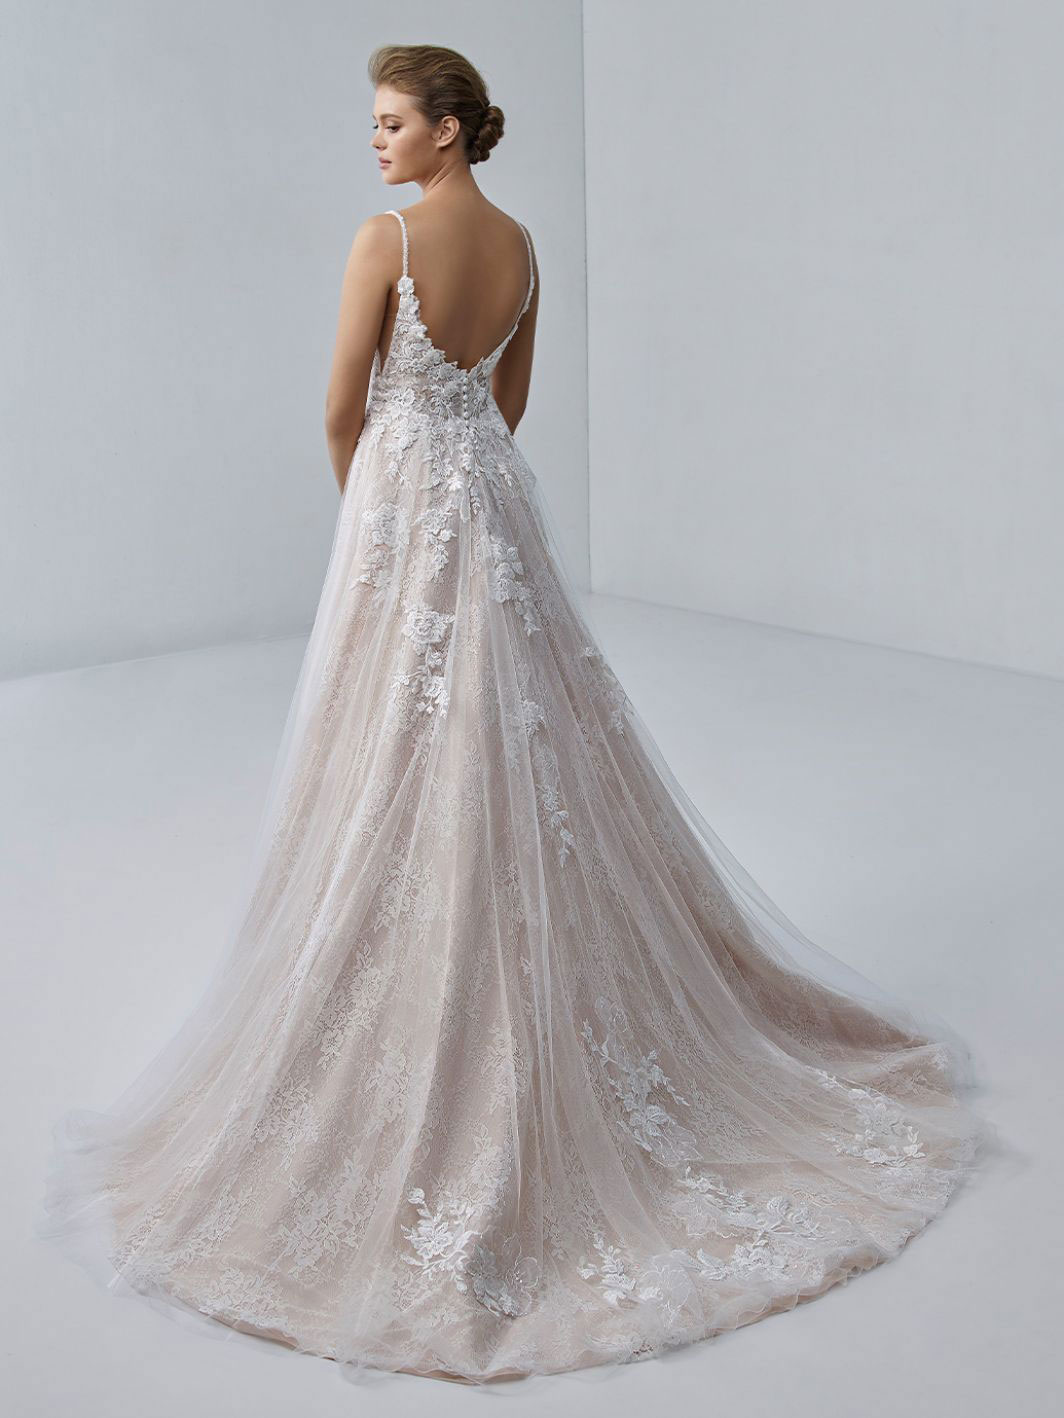 Chloe wedding dress by Elysee